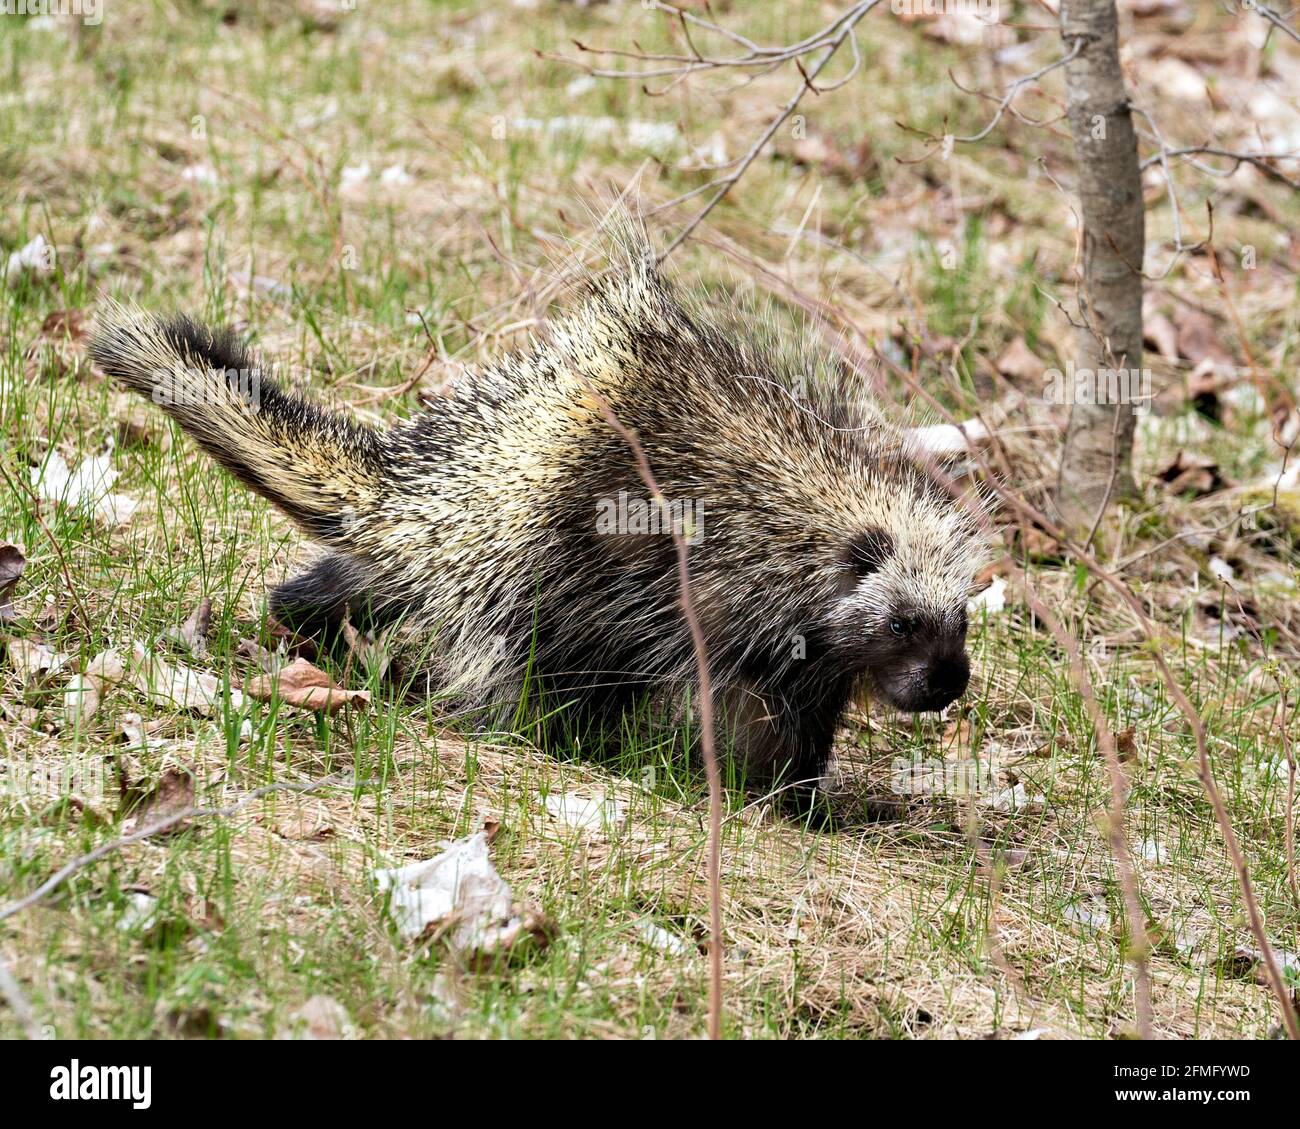 Porcupine marchant dans la prairie avec un arrière-plan flou, montrant le corps, la tête, le manteau de épines vives, des quills, dans la saison de printemps dans son environnement. Banque D'Images